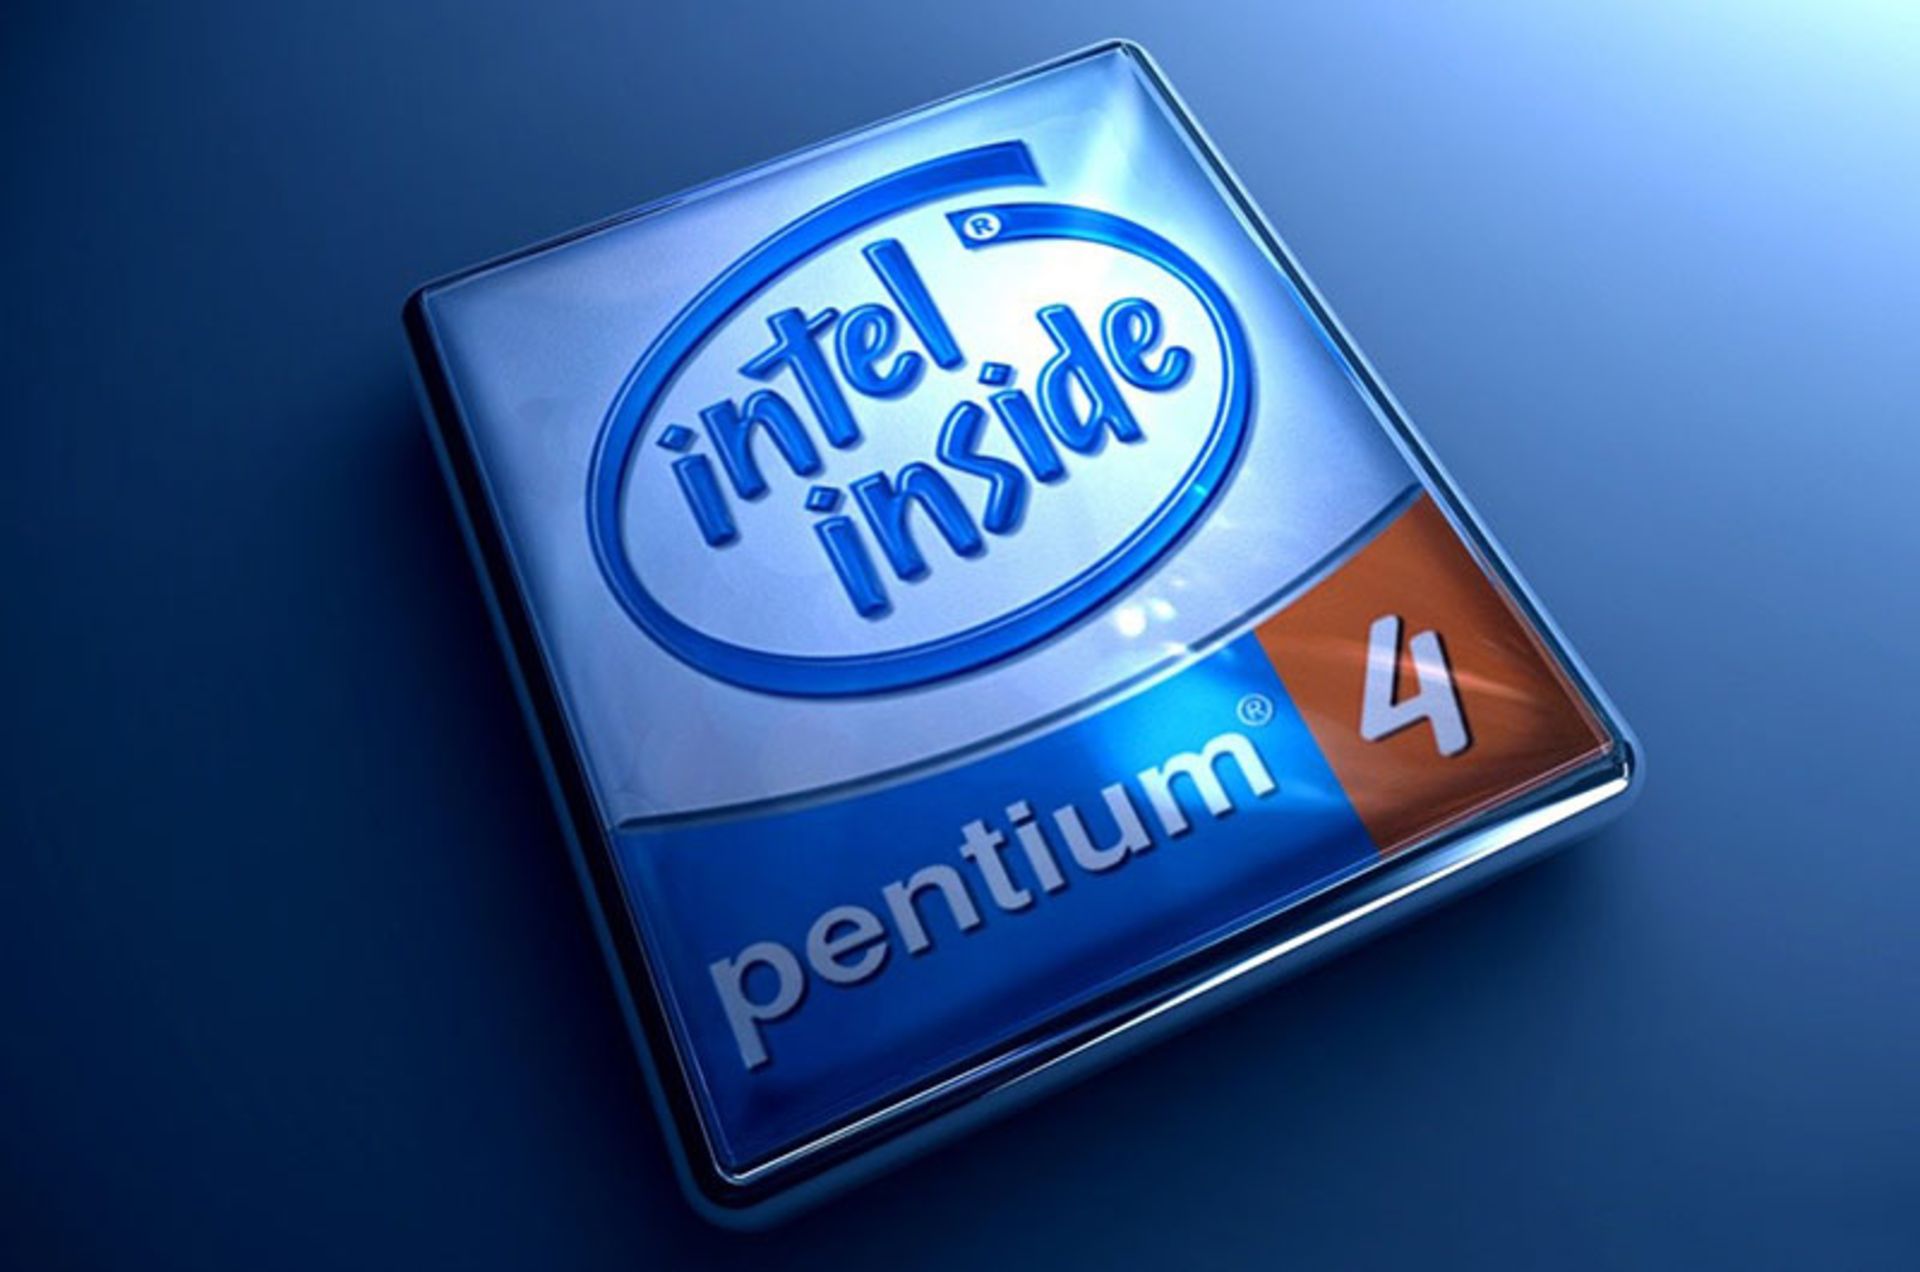 مرجع متخصصين ايران لوگوي پردازنده اينتل پنتيوم 4 intel pentium 4 cpu logo